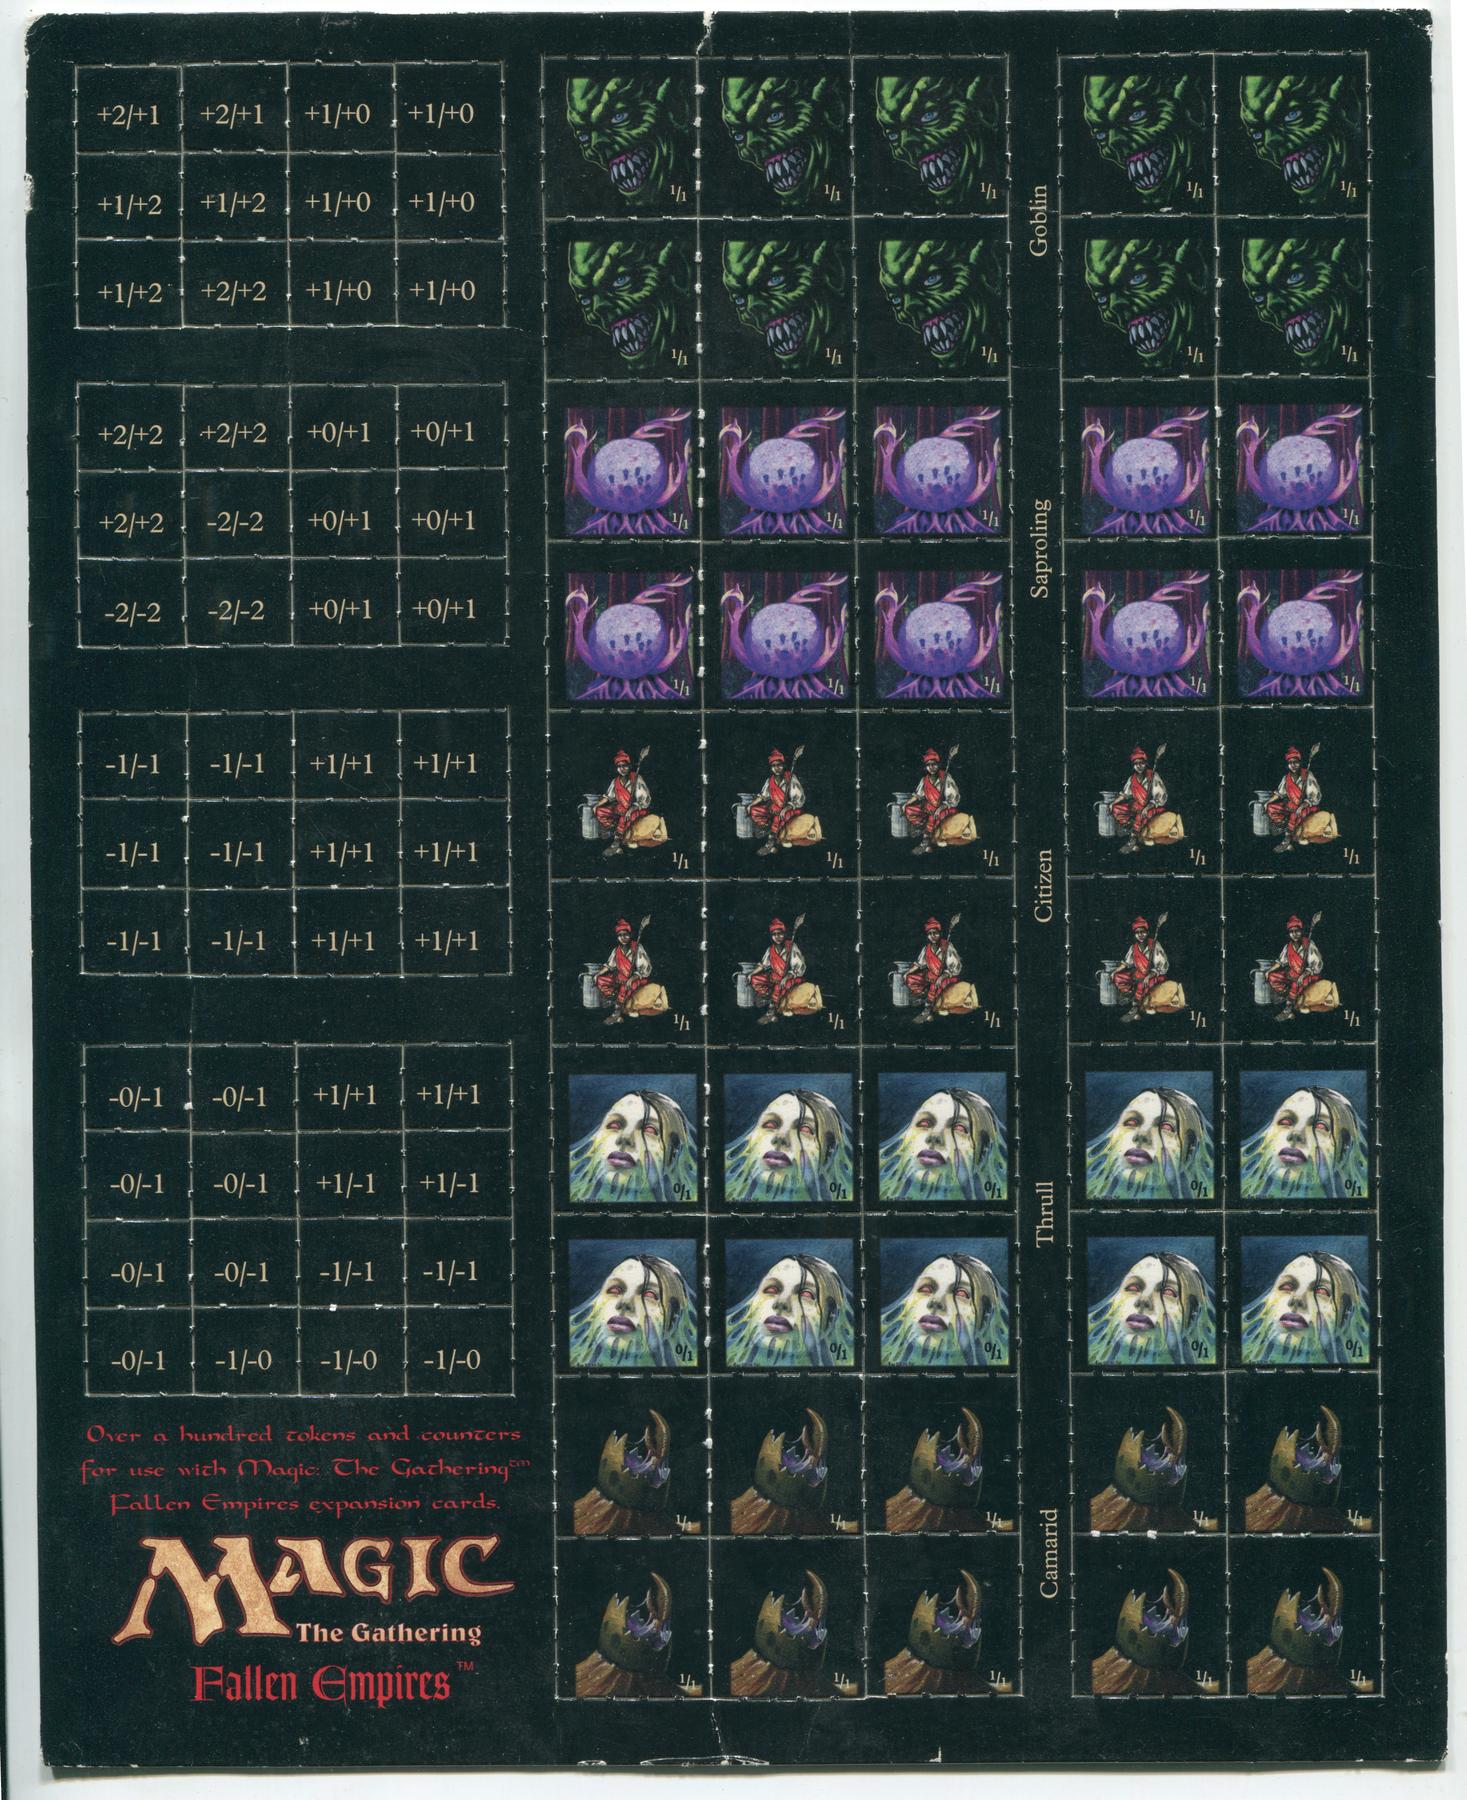 Magic the Gathering Fallen Empires Token and Counter Sheet Set